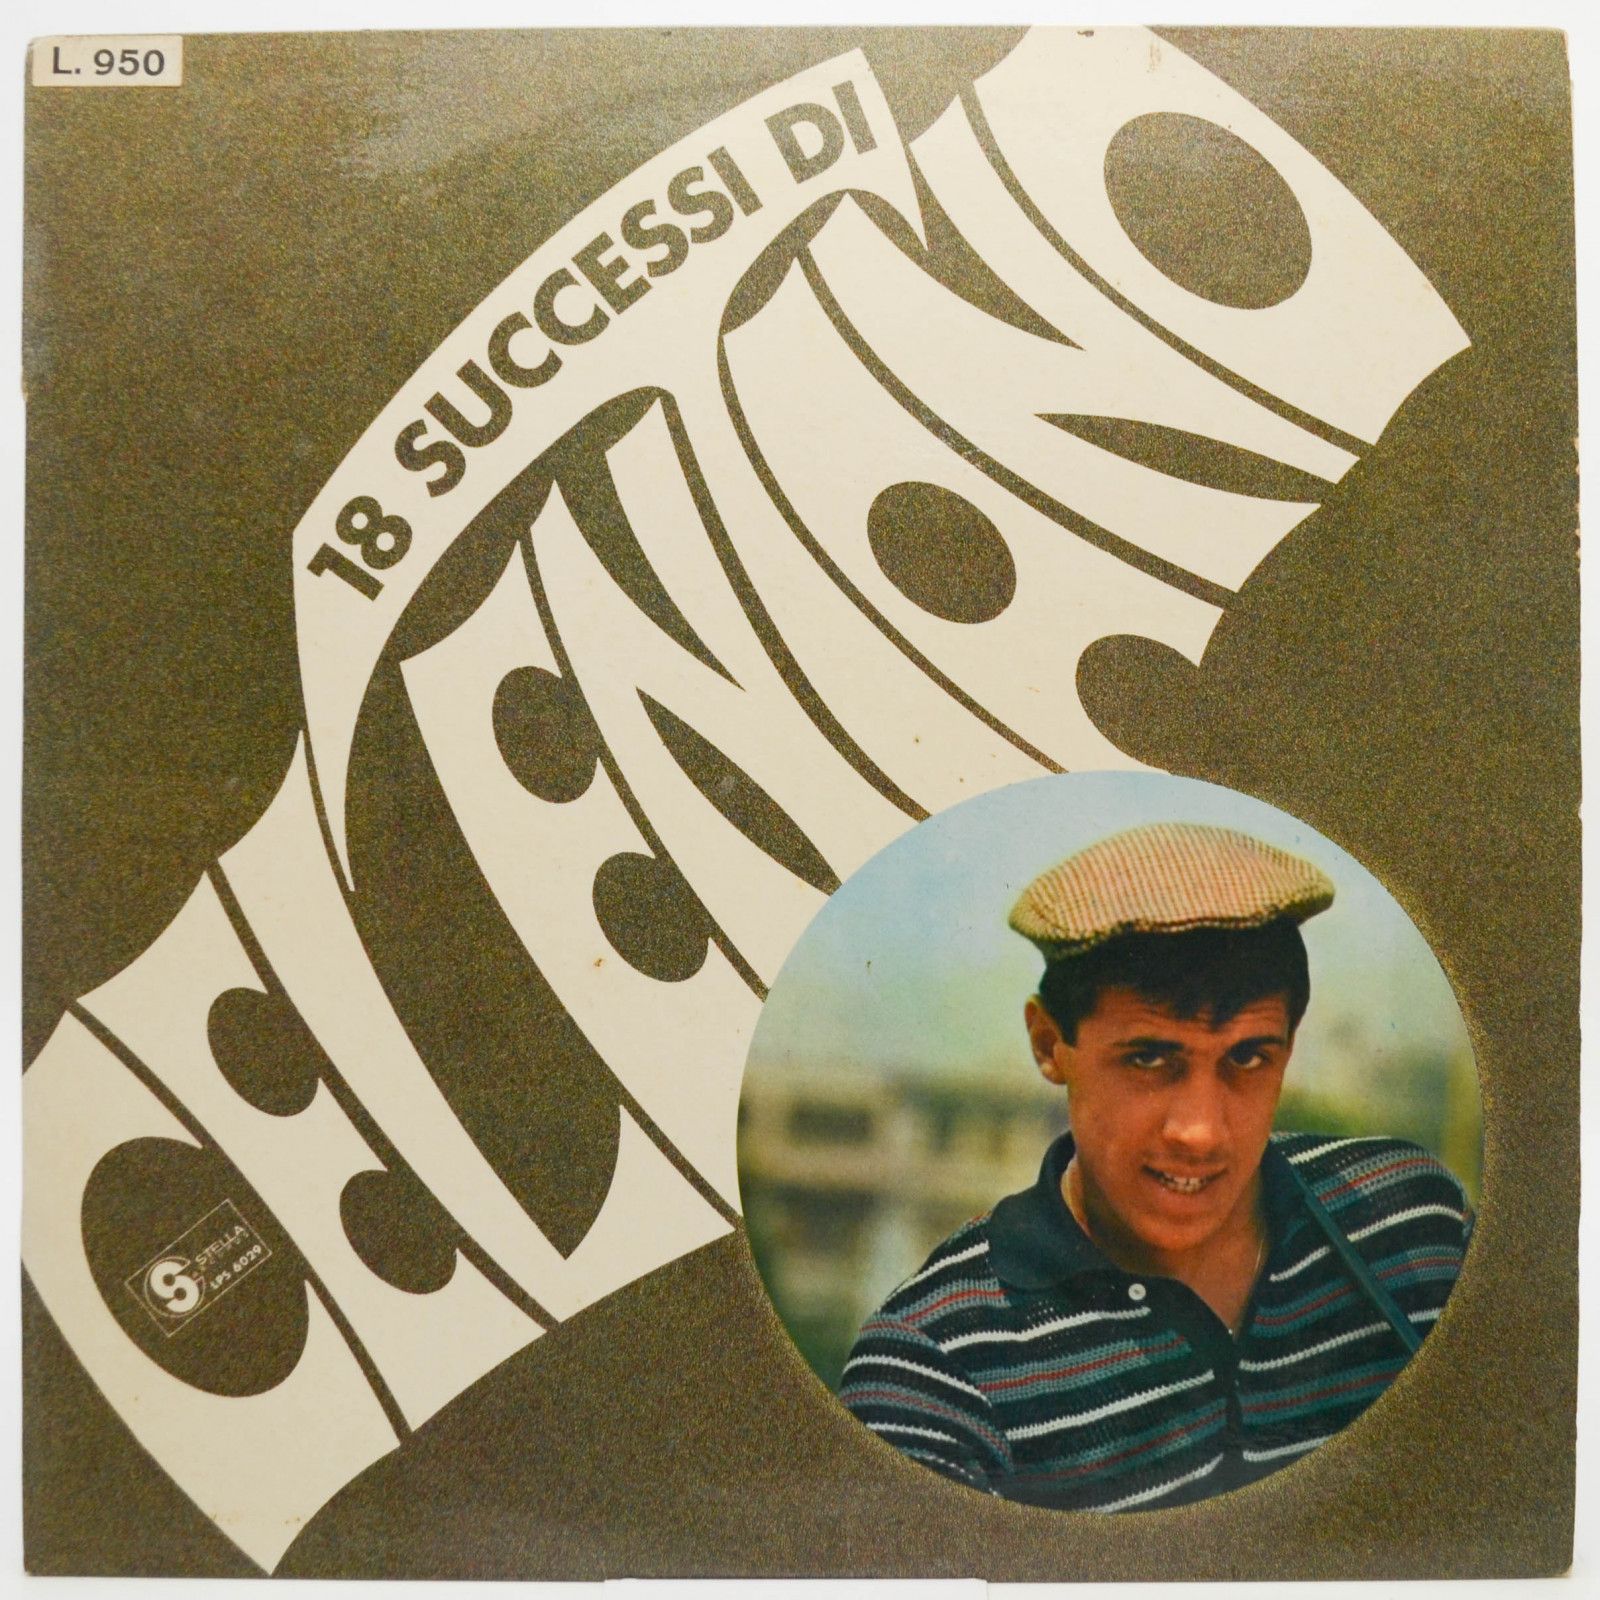 Adriano Celentano — 18 Successi Di Celentano (1-st, Italy), 1965